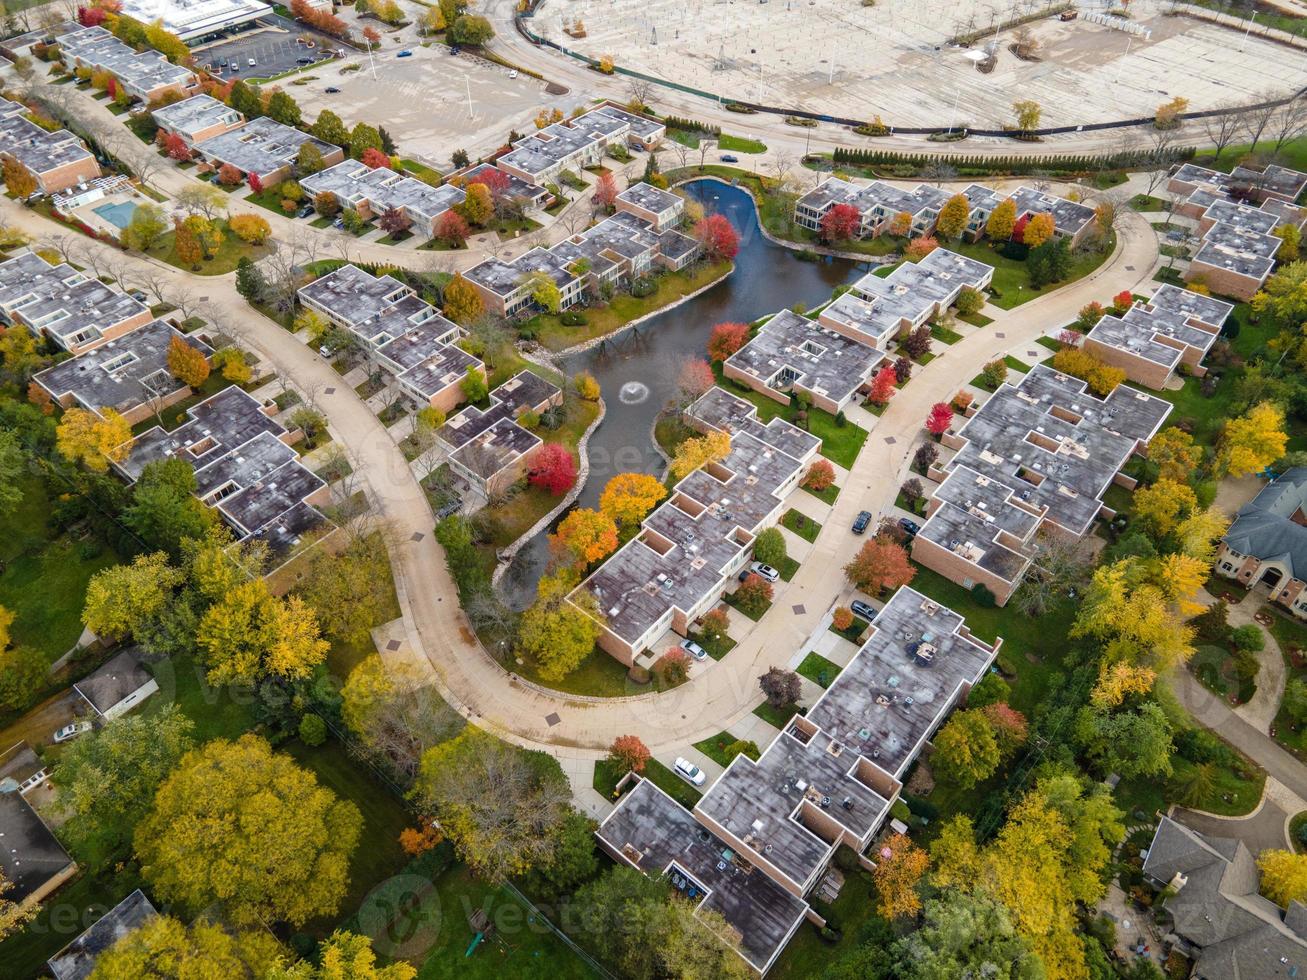 vista aérea do bairro residencial em northfield, il. muitas árvores começando a ficar com as cores do outono. grandes complexos de apartamentos e casas residenciais. sinuosas ruas arborizadas. foto